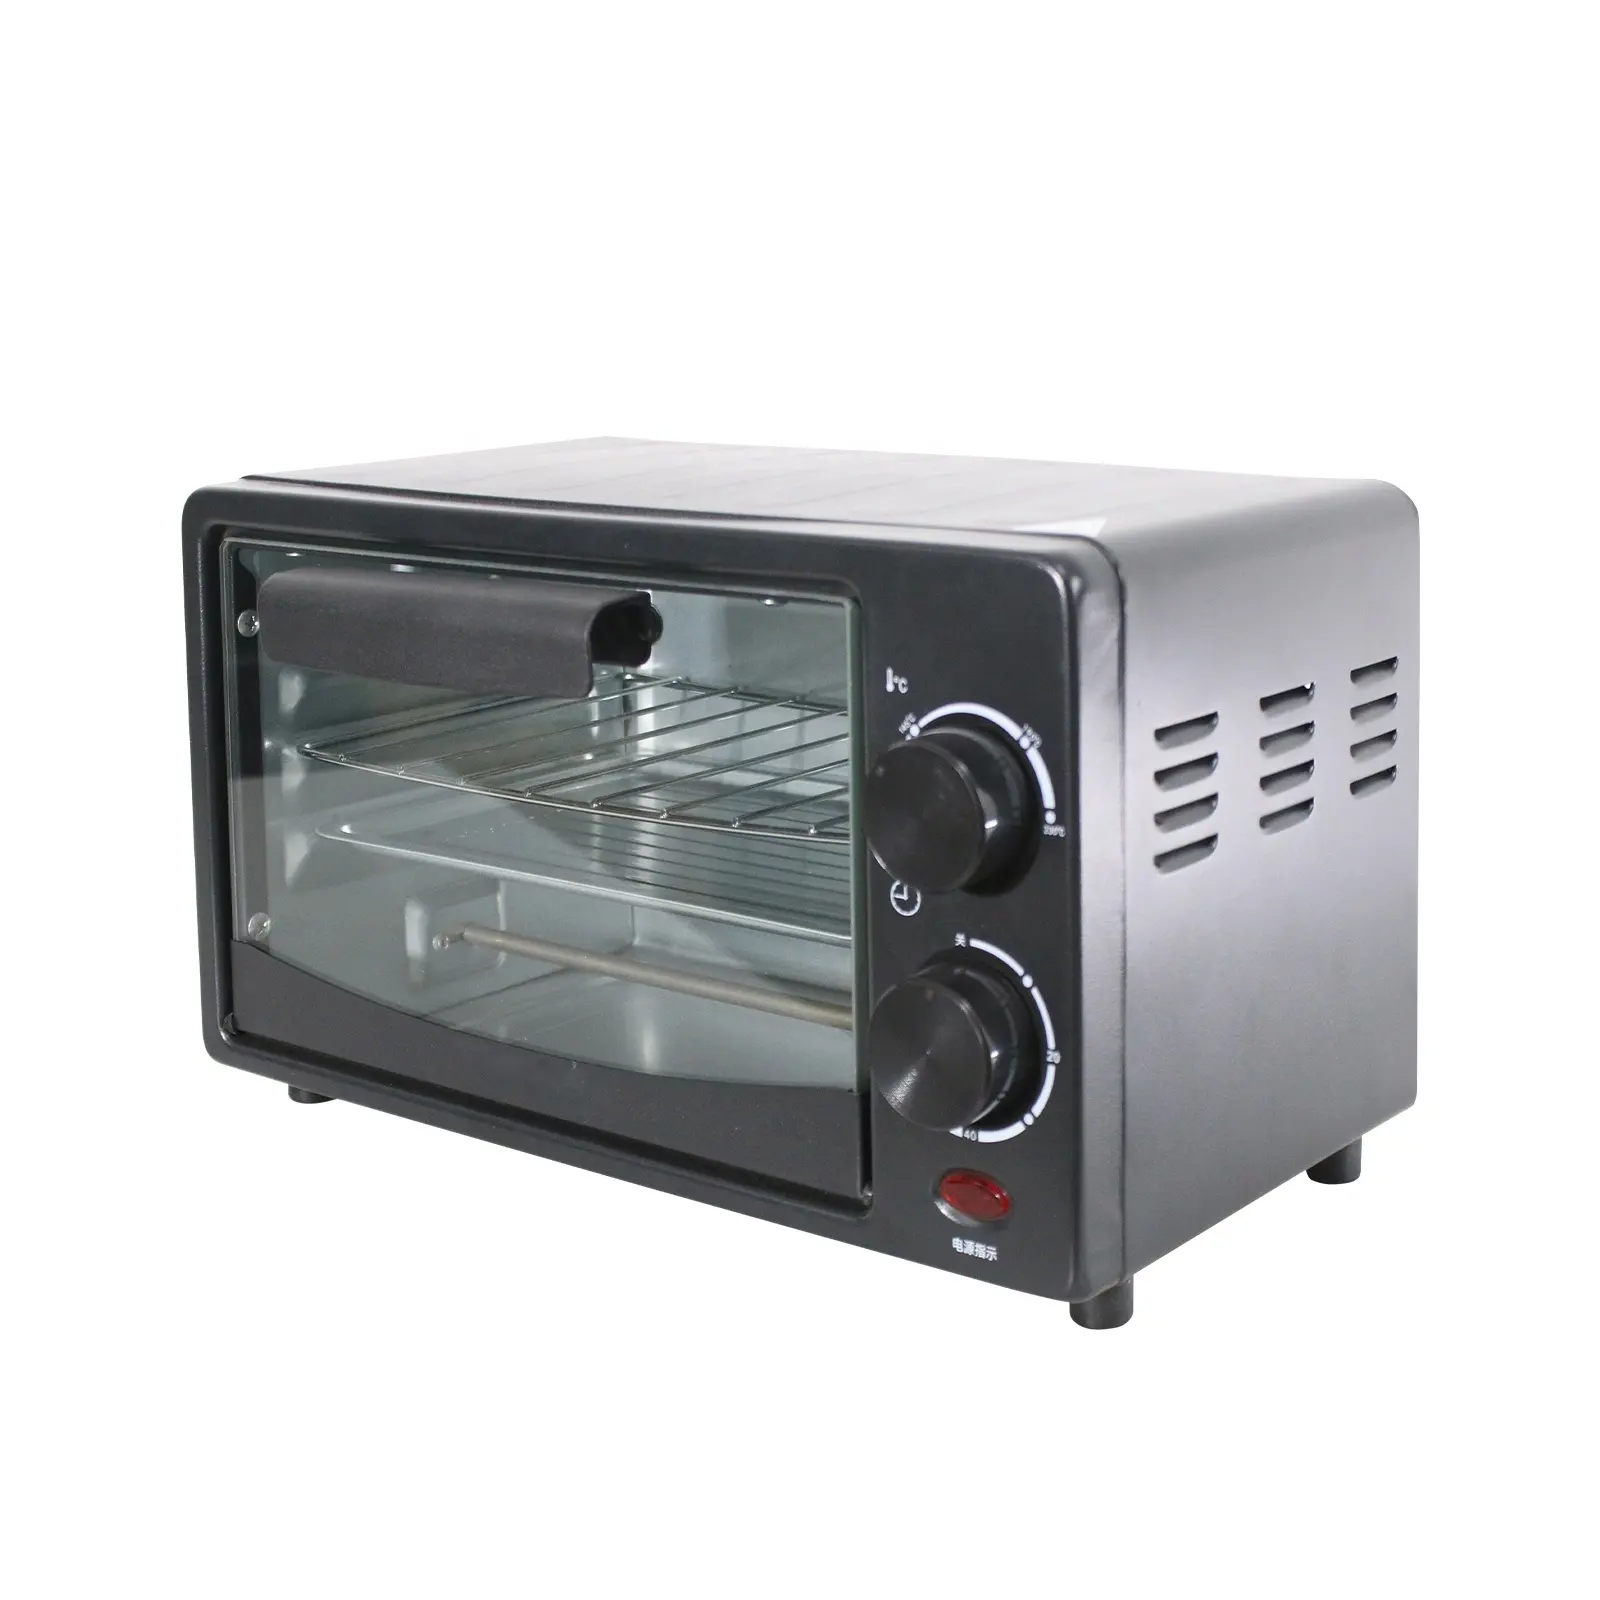 OEM Oven pemanggang roti meja 7l, Oven Pizza elektrik kapasitas kecil